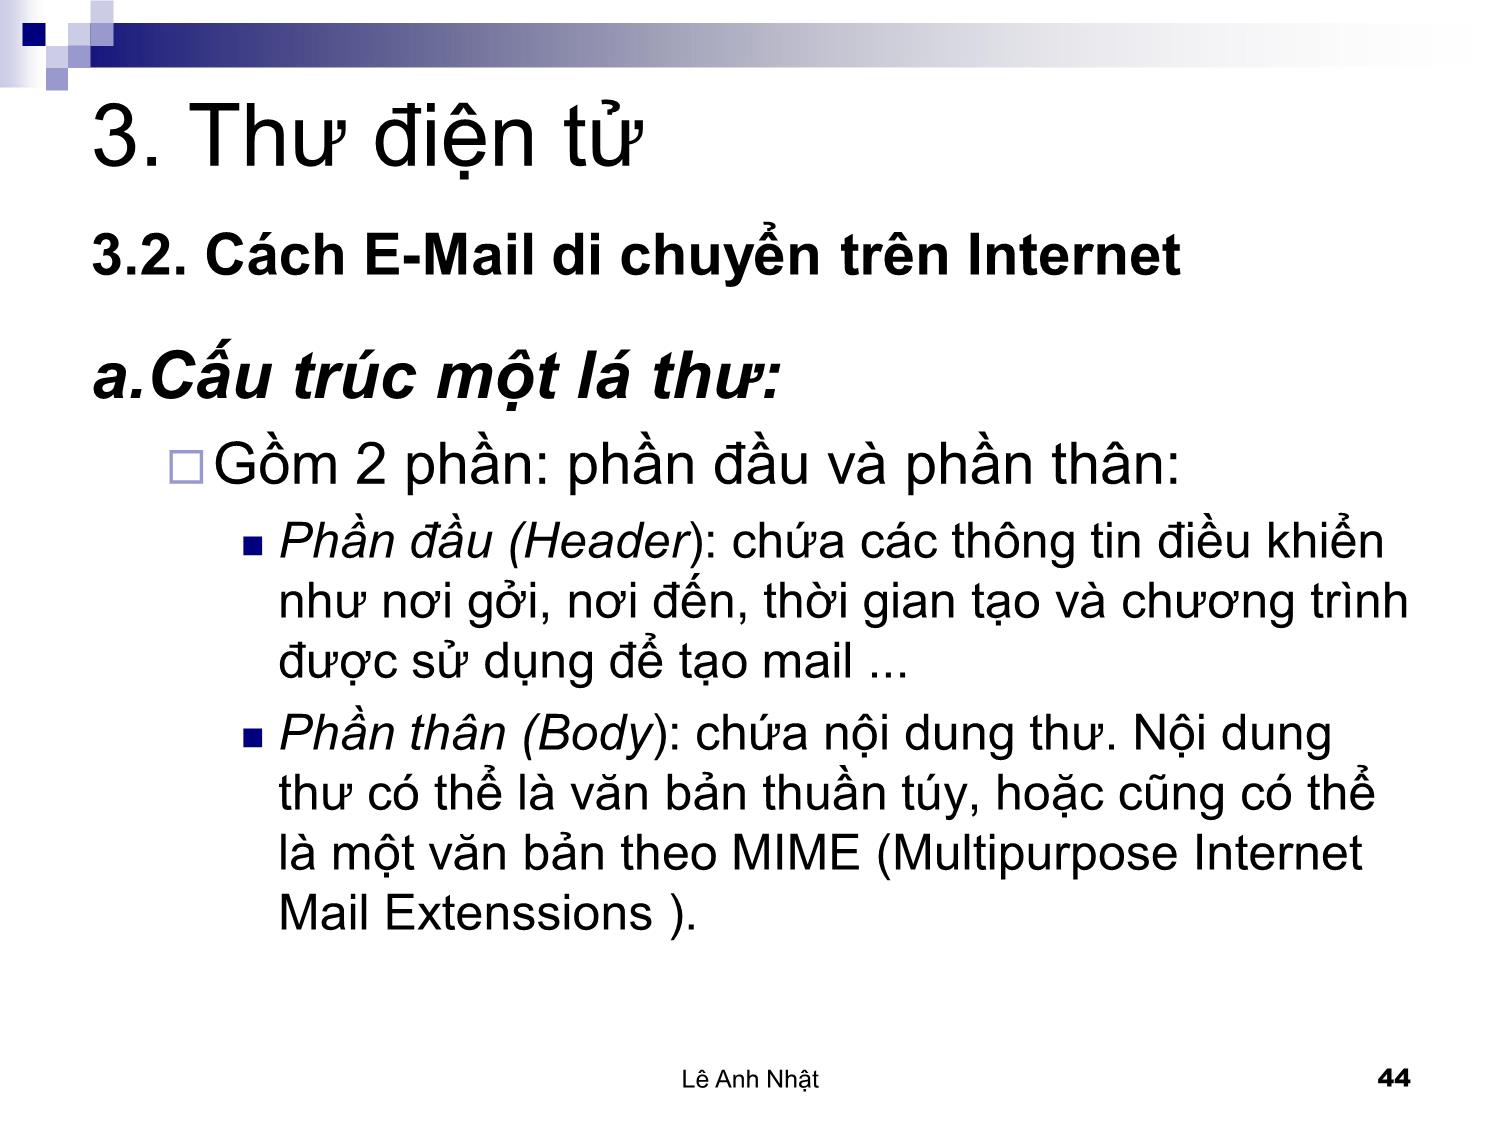 Bài giảng Internet - Chương 3: Thư điện tử. Internet Mail - Lê Anh Nhật trang 3